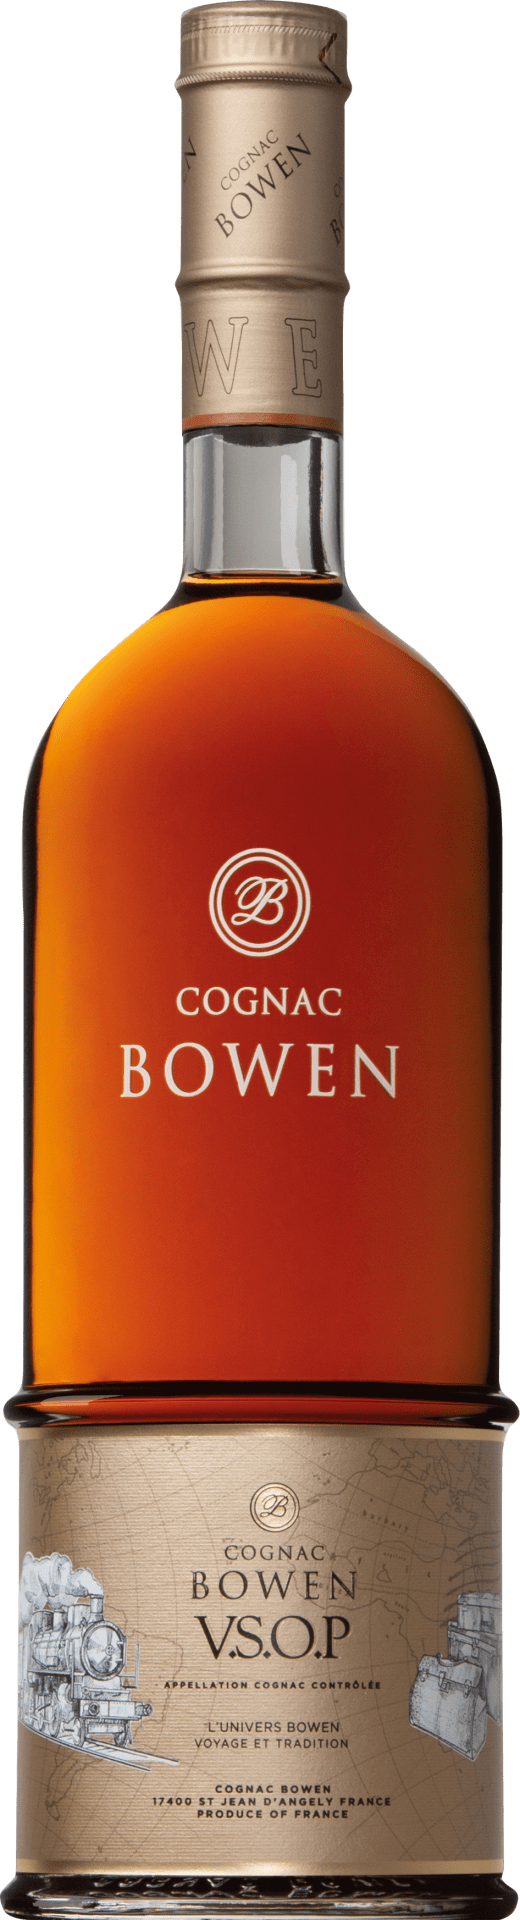 Cognac Bowen Cognac Bowen VSOP 4-5 Jahre in GP - 0.7 l